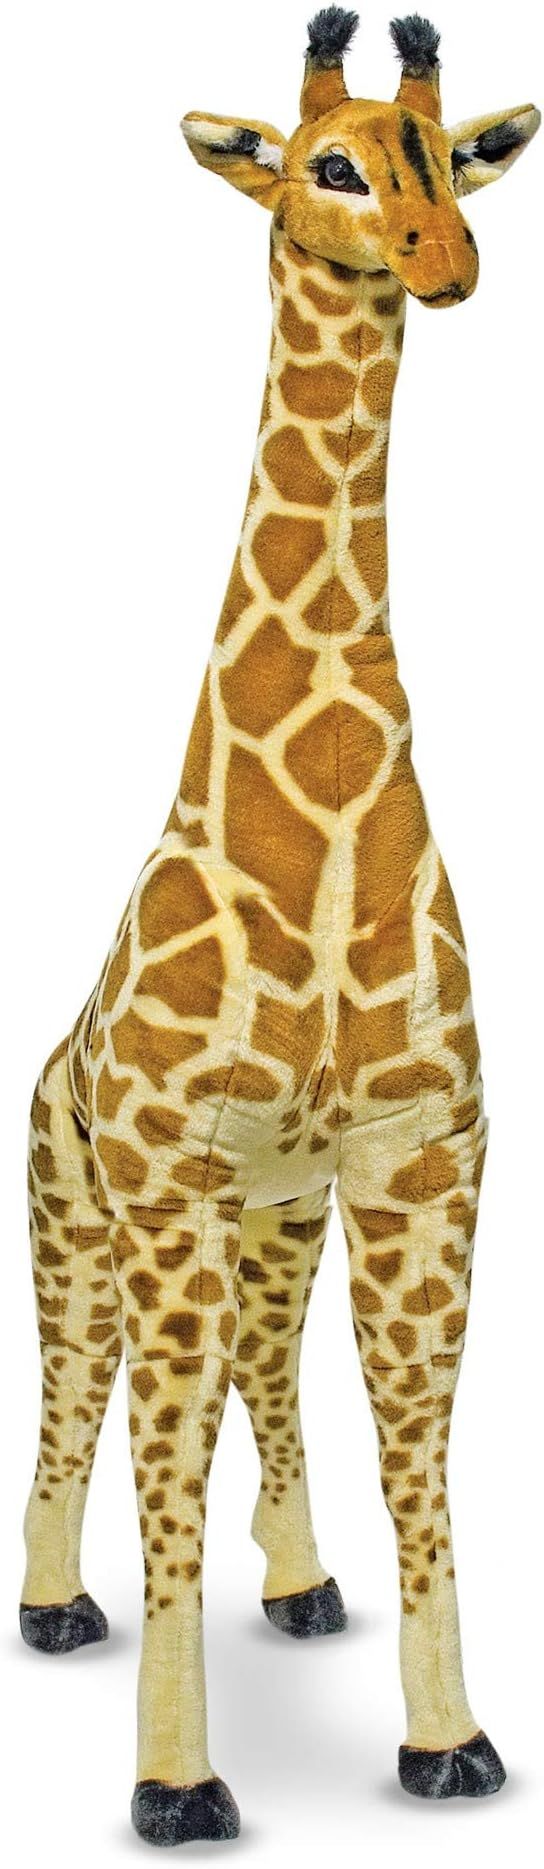 Melissa & Doug Giant Giraffe, Playspaces & Room Decor, Lifelike Stuffed Animal, Soft Fabric, Over... | Amazon (CA)